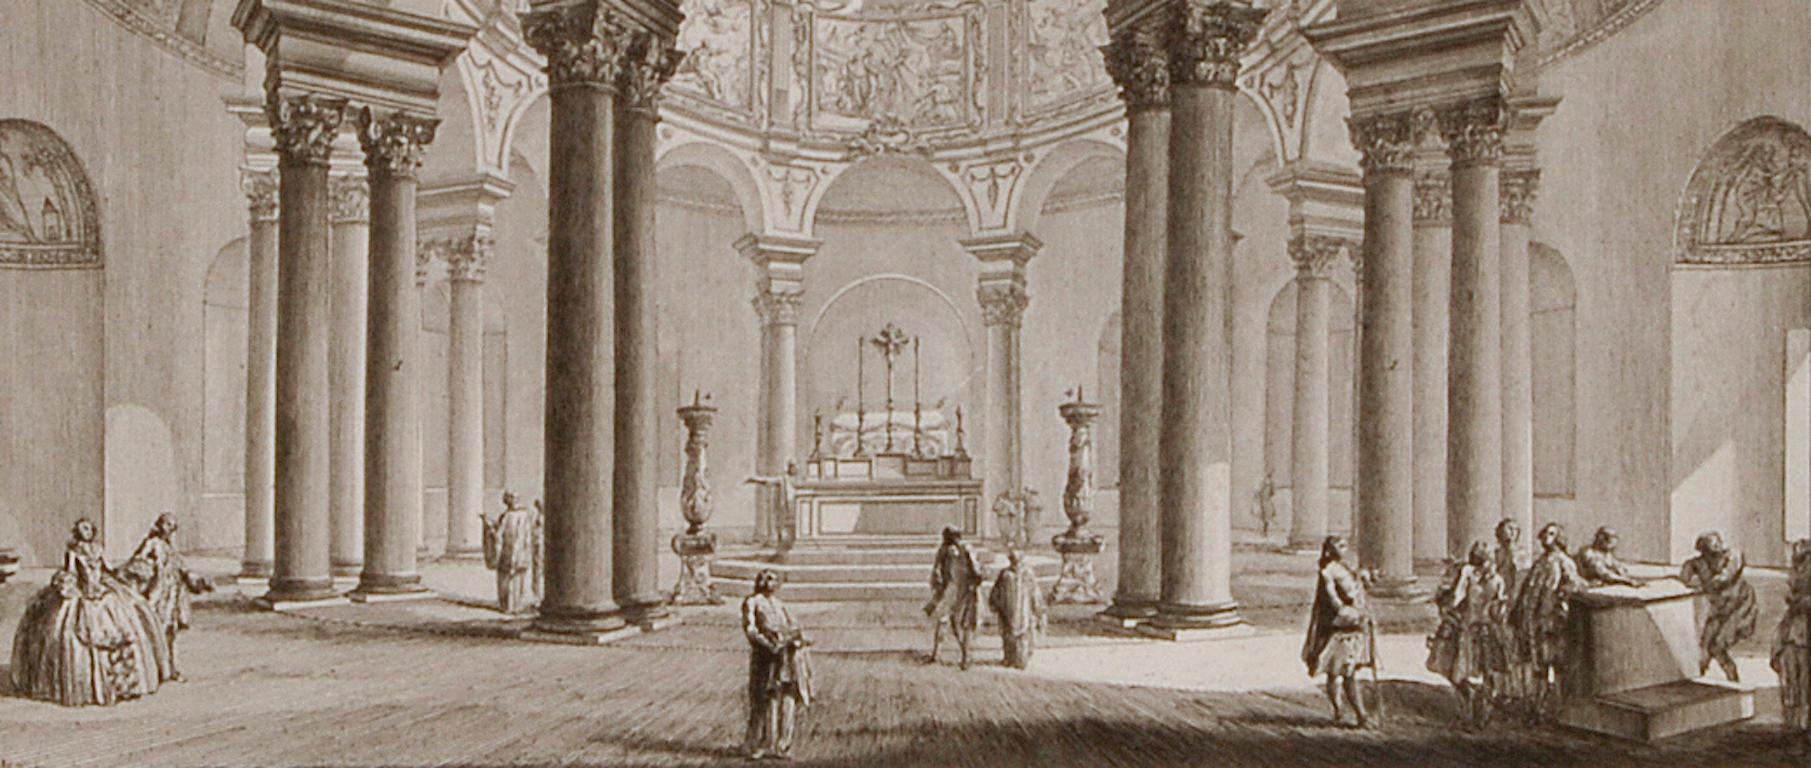 Church of St. Costanza, Rom: Eine architektonische Radierung aus Piranesi aus dem 18. Jahrhundert  (Alte Meister), Print, von Giovanni Battista Piranesi